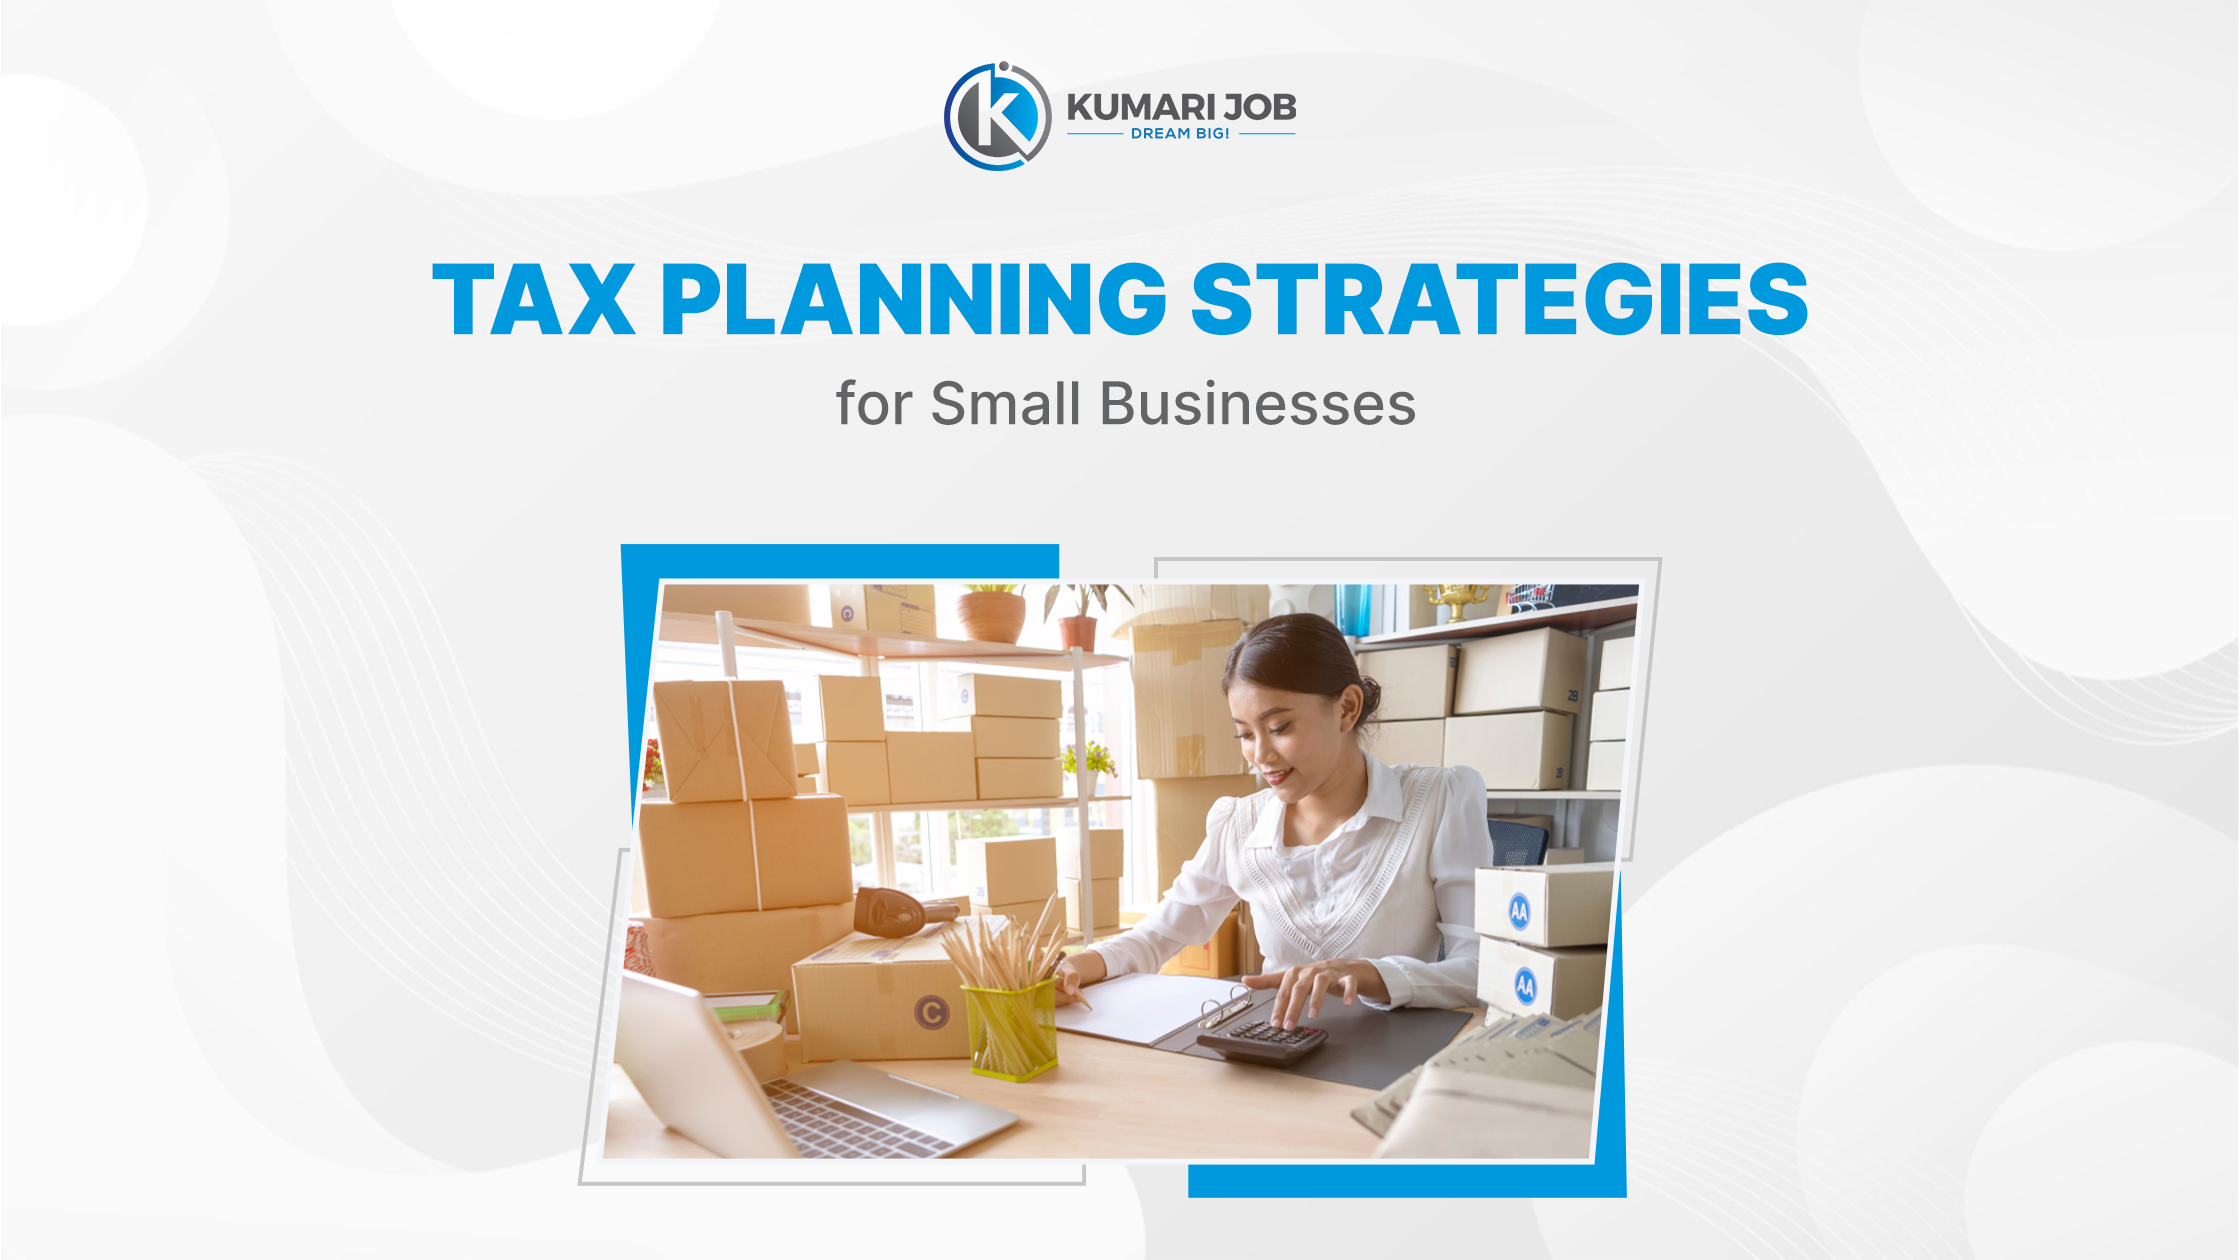 Tax saving strategies